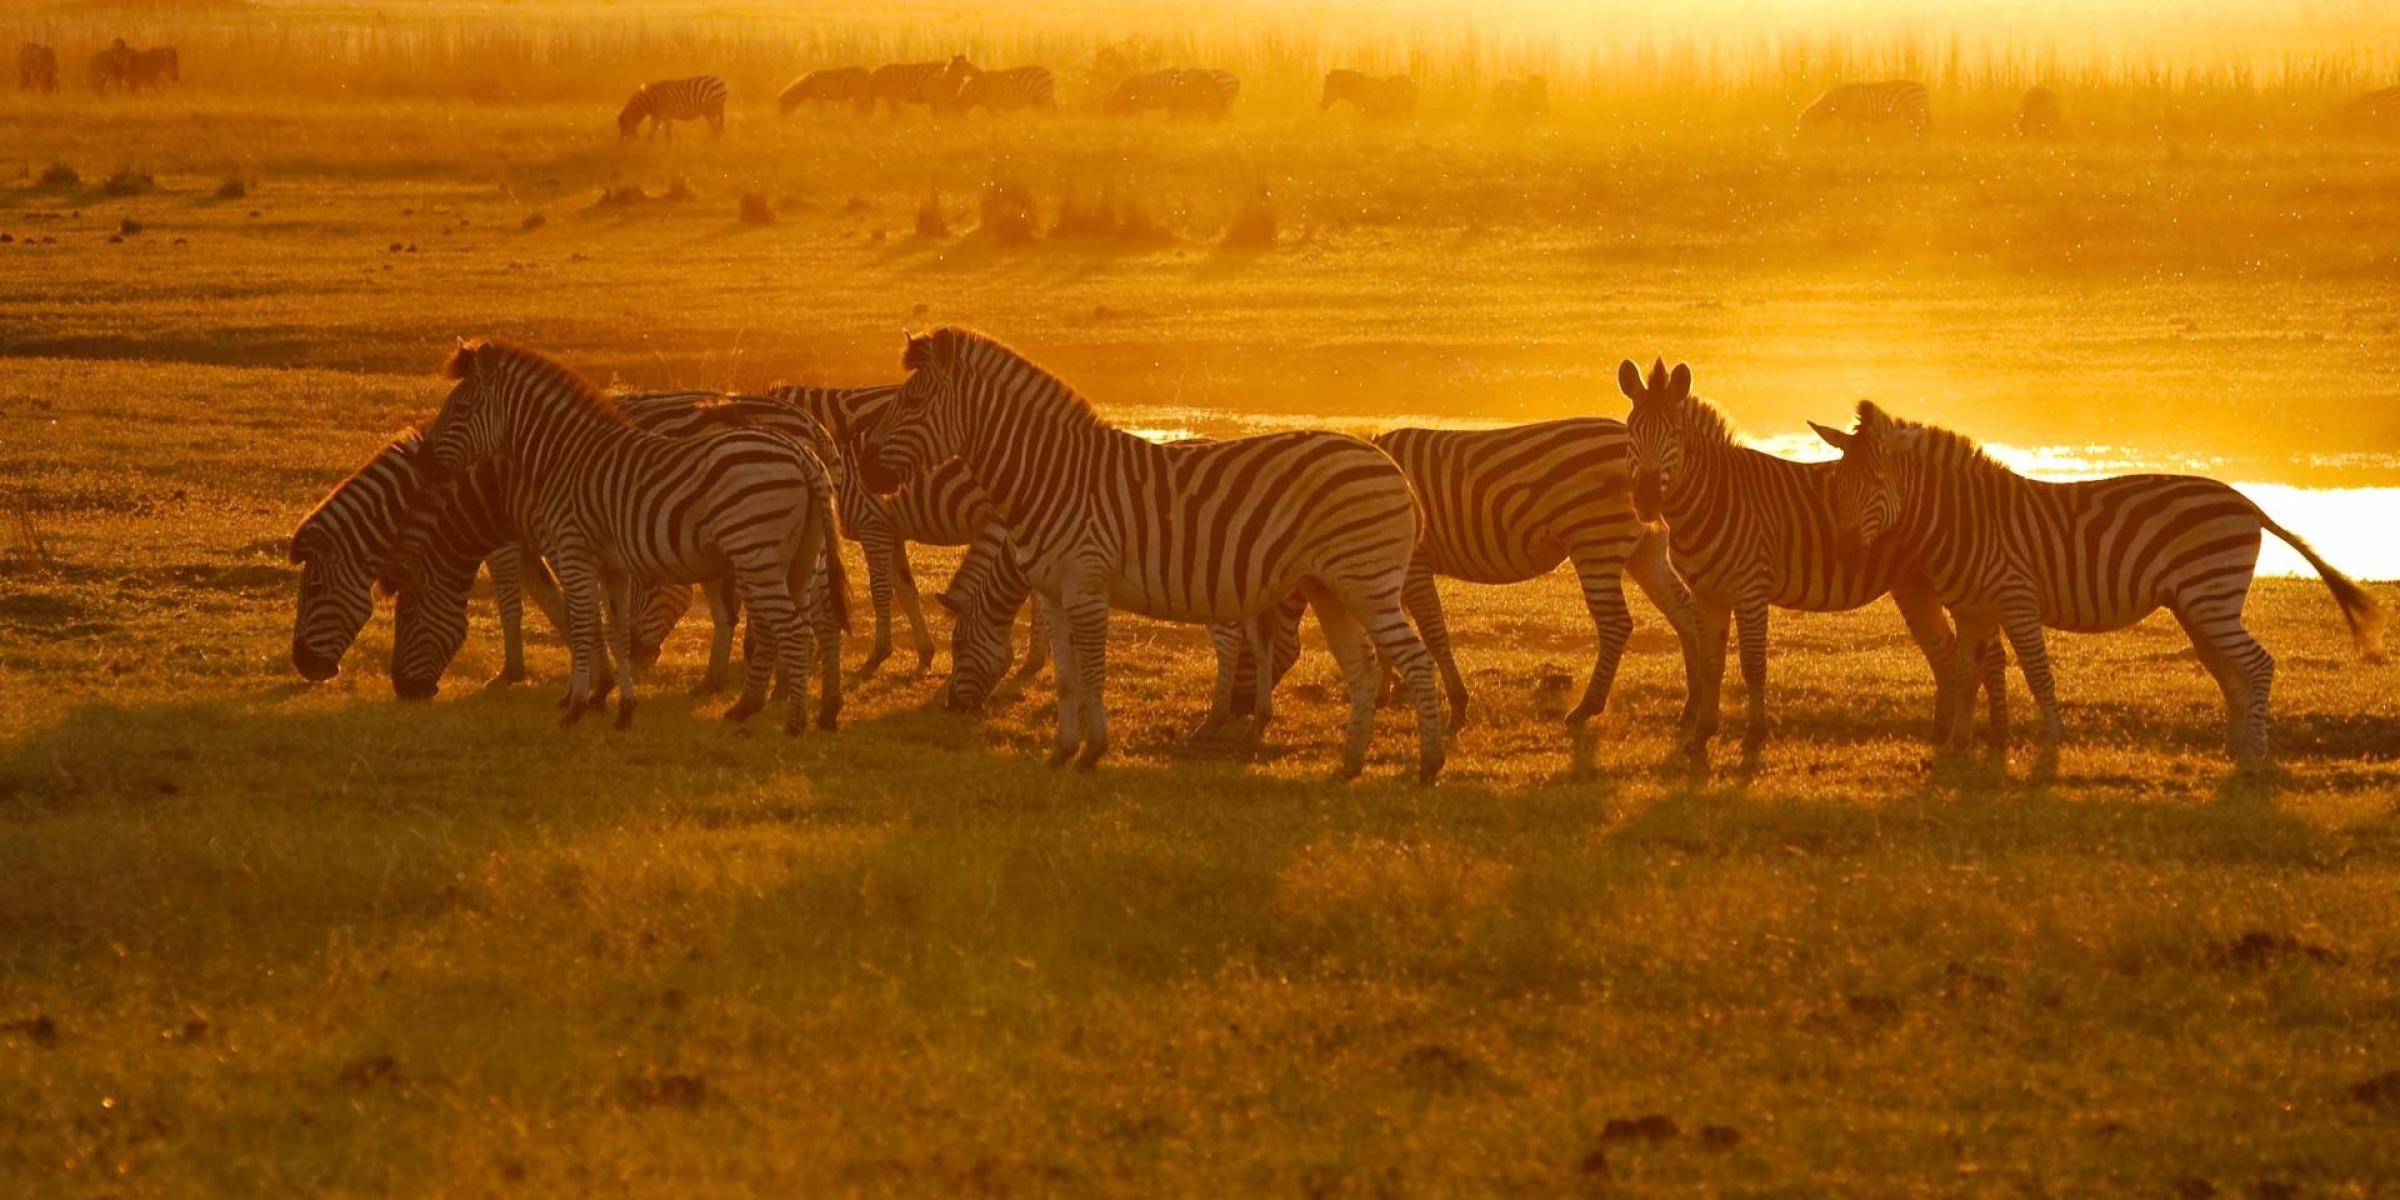 Afrika Reisen: Afrika auf einer unvergesslichen Reise entdecken. Zebras in der Serengeti bei Sonneuntergang liver erleben